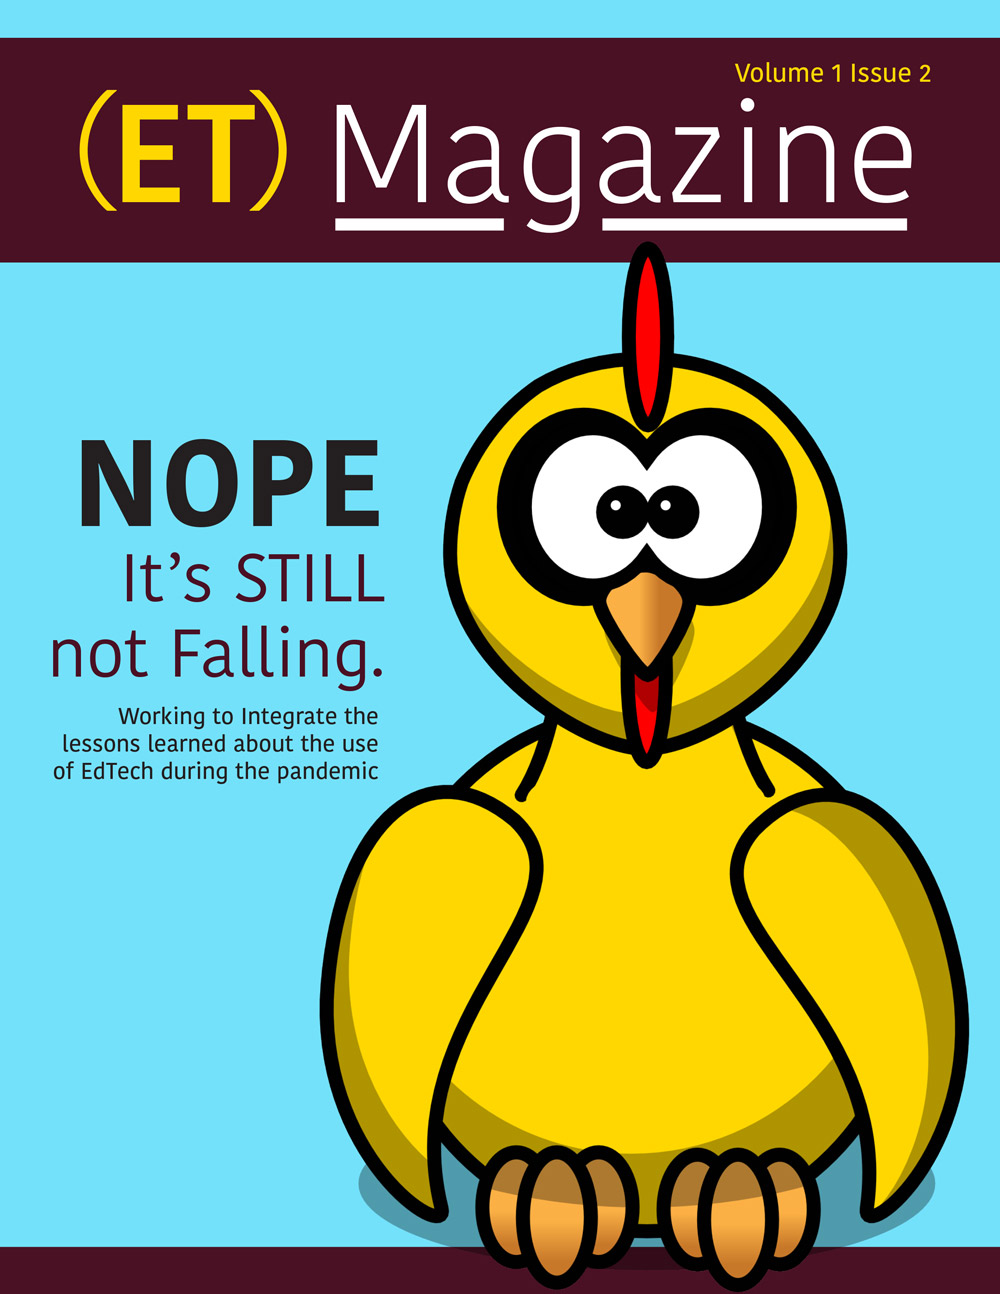 ET Magazine Issue 1 Volume 2 cover